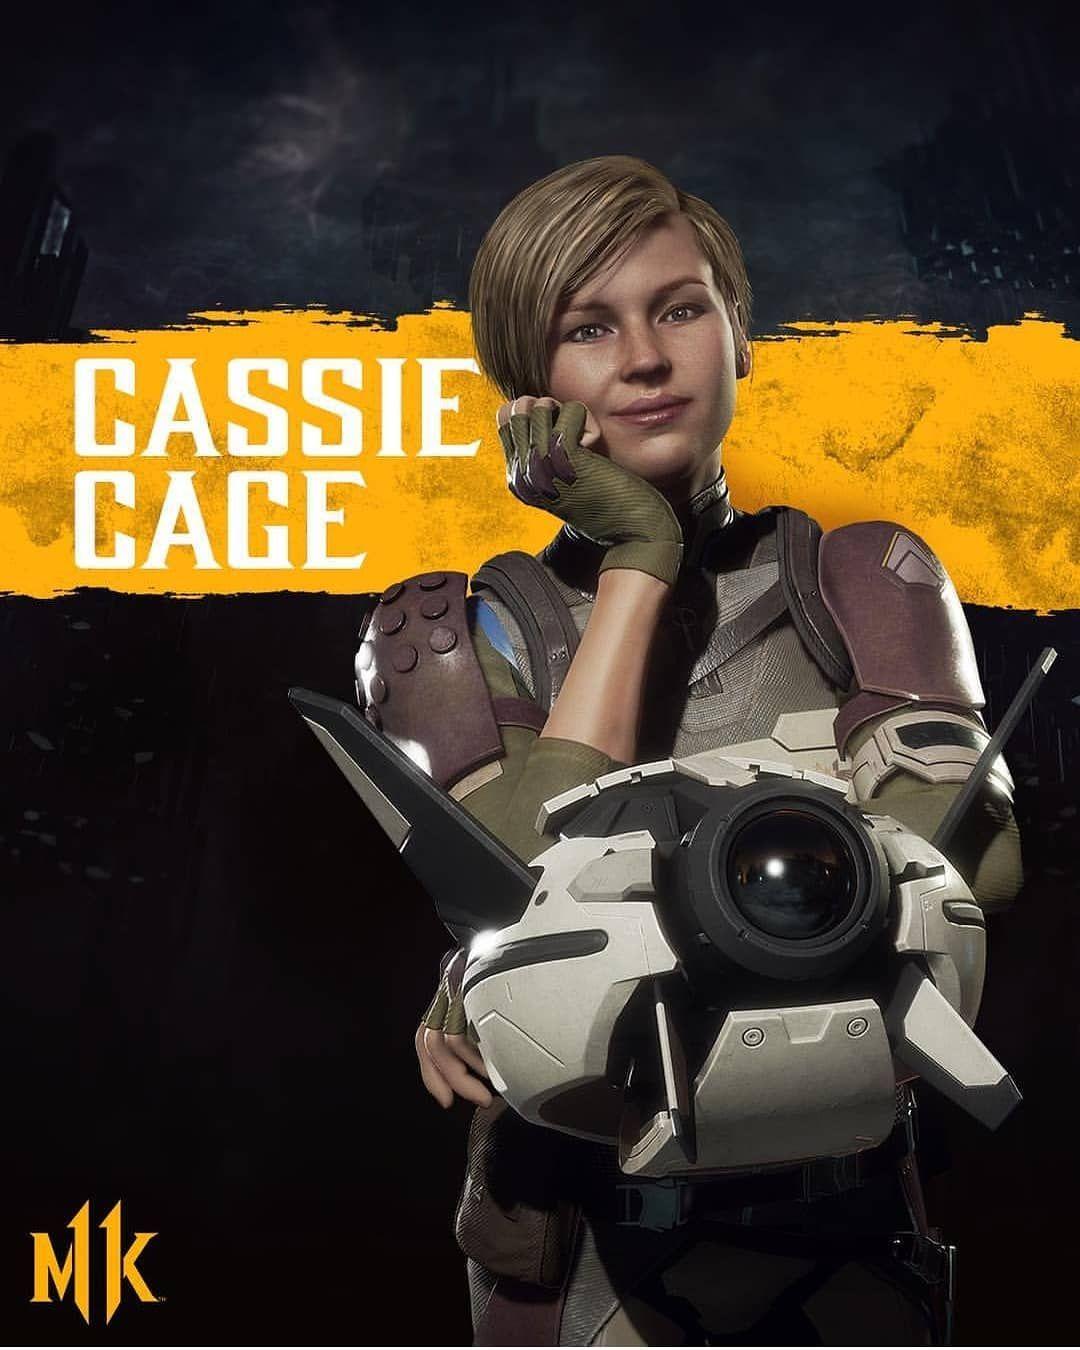 cassie cage mk 11